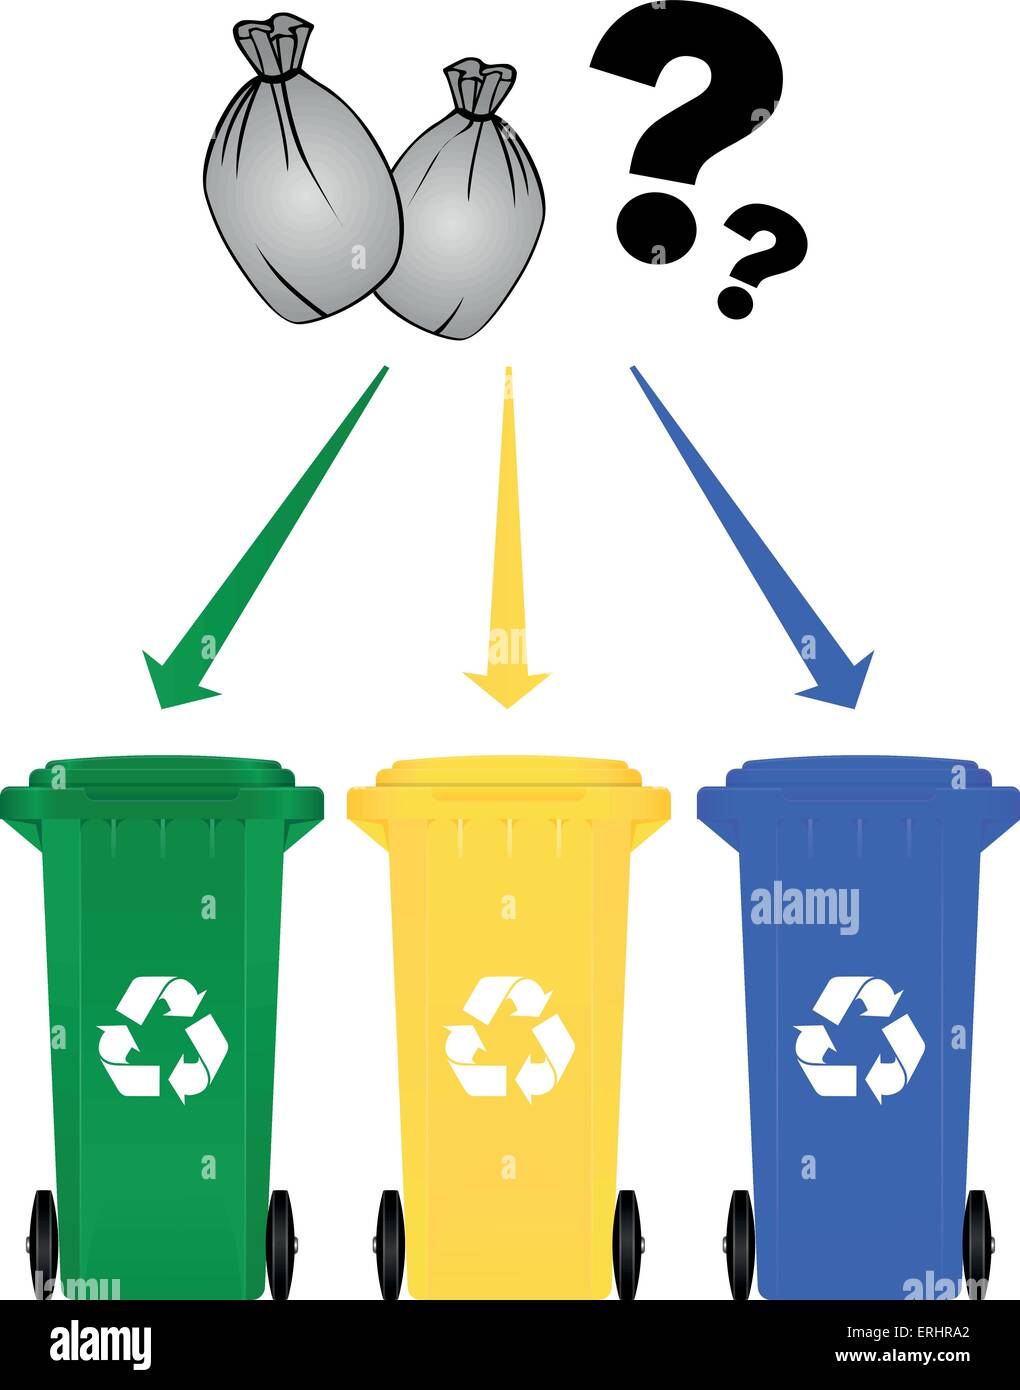 Vector sort. Selective waste Containers. Упорядочивание иллюстрация. Sorting illustration. Selection sort illustration.